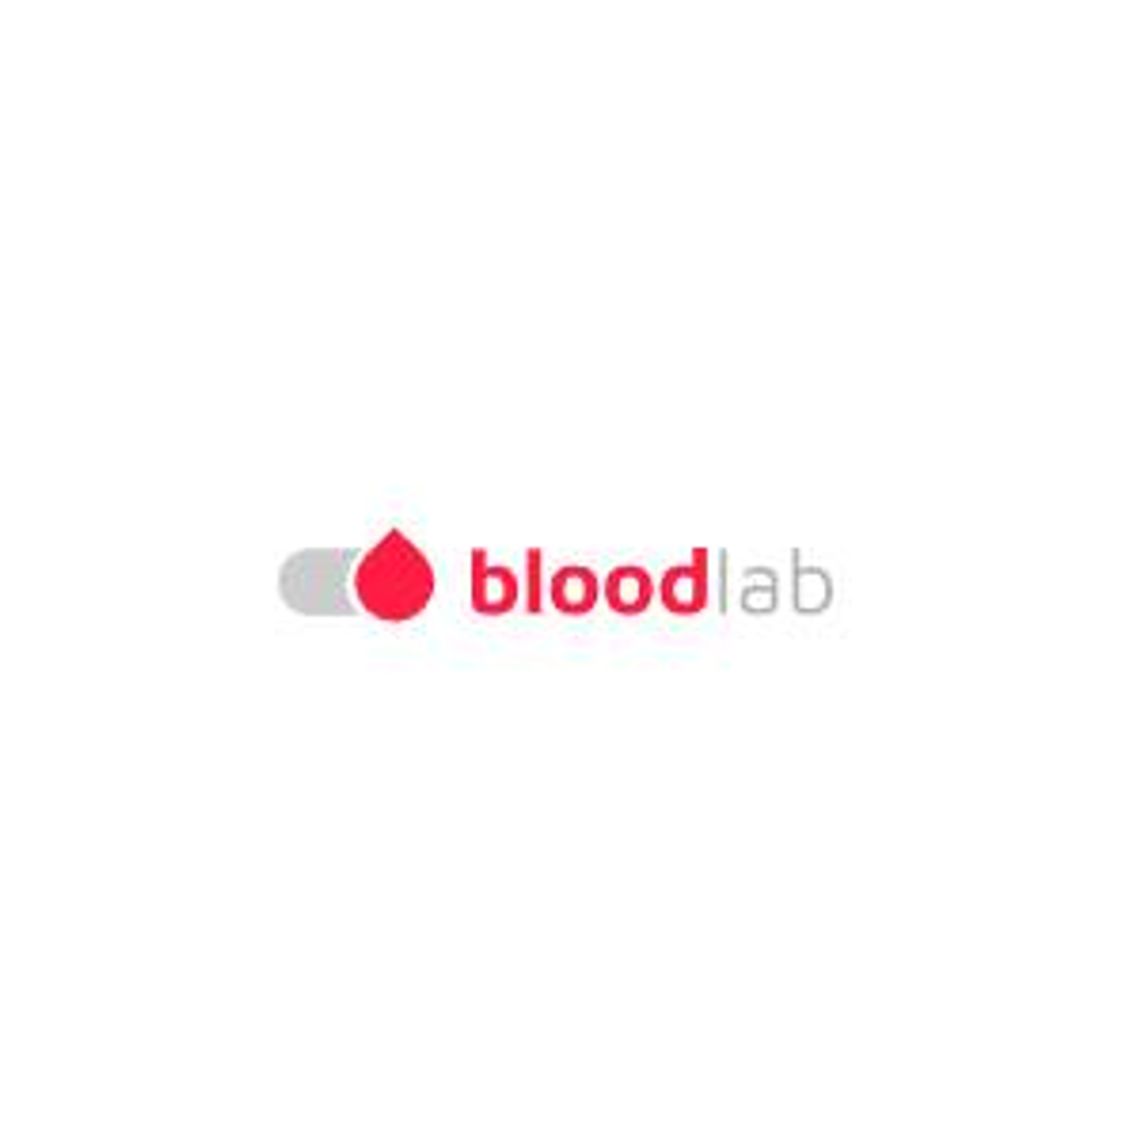 Spersonalizowana interpretacja wyników badań - Bloodlab